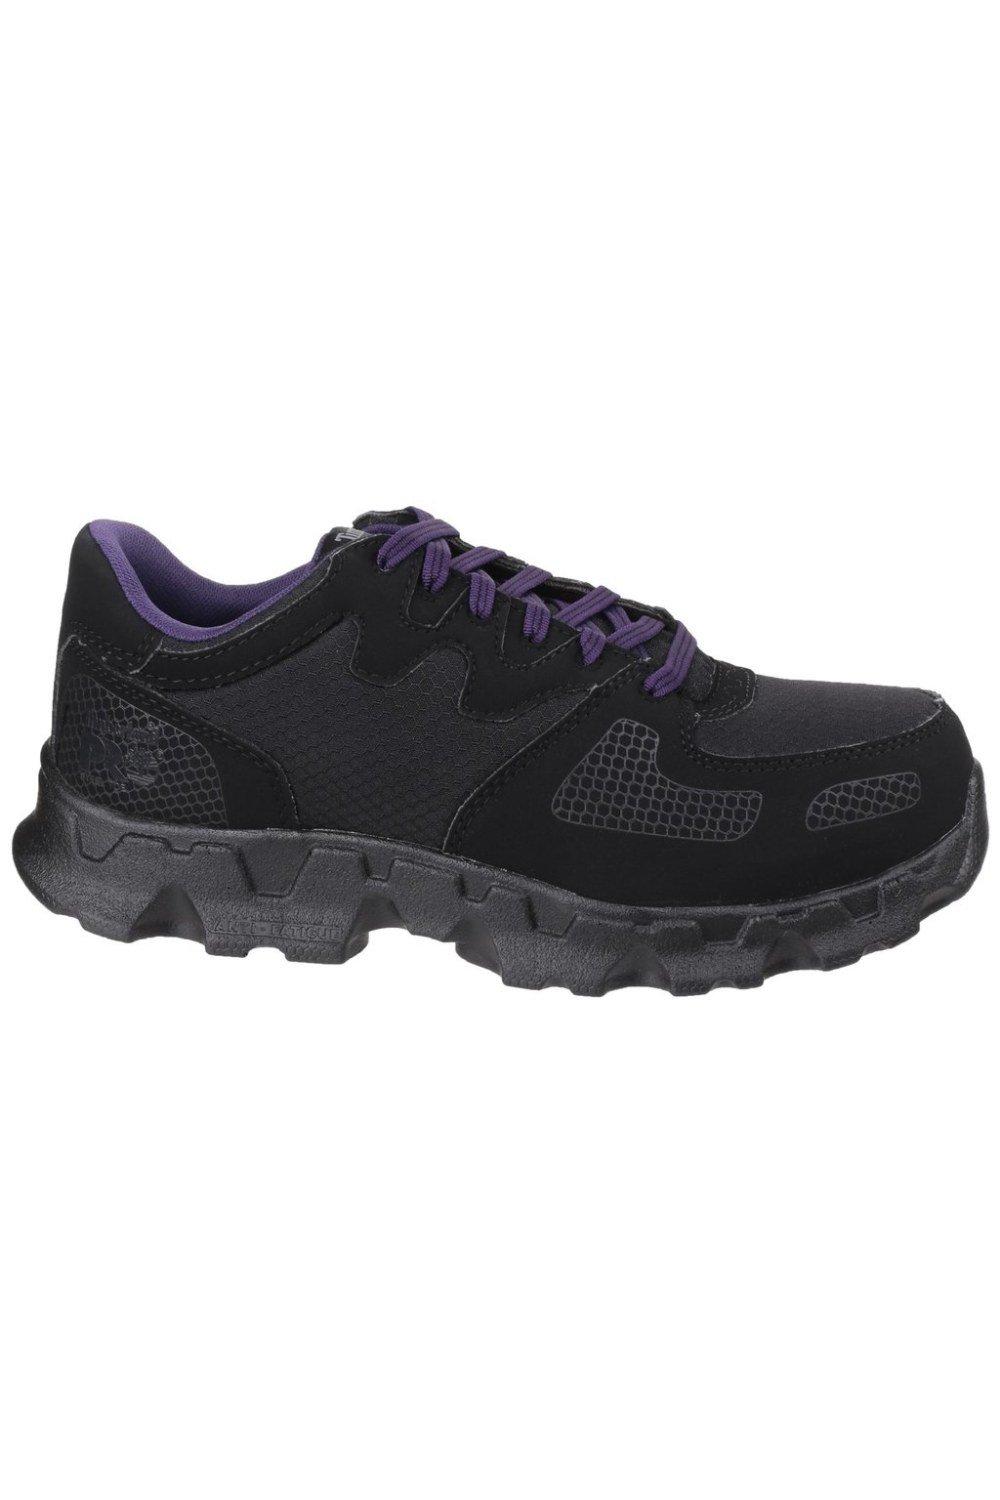 Защитная обувь Pro Powertrain с низкой шнуровкой Timberland, черный цена и фото